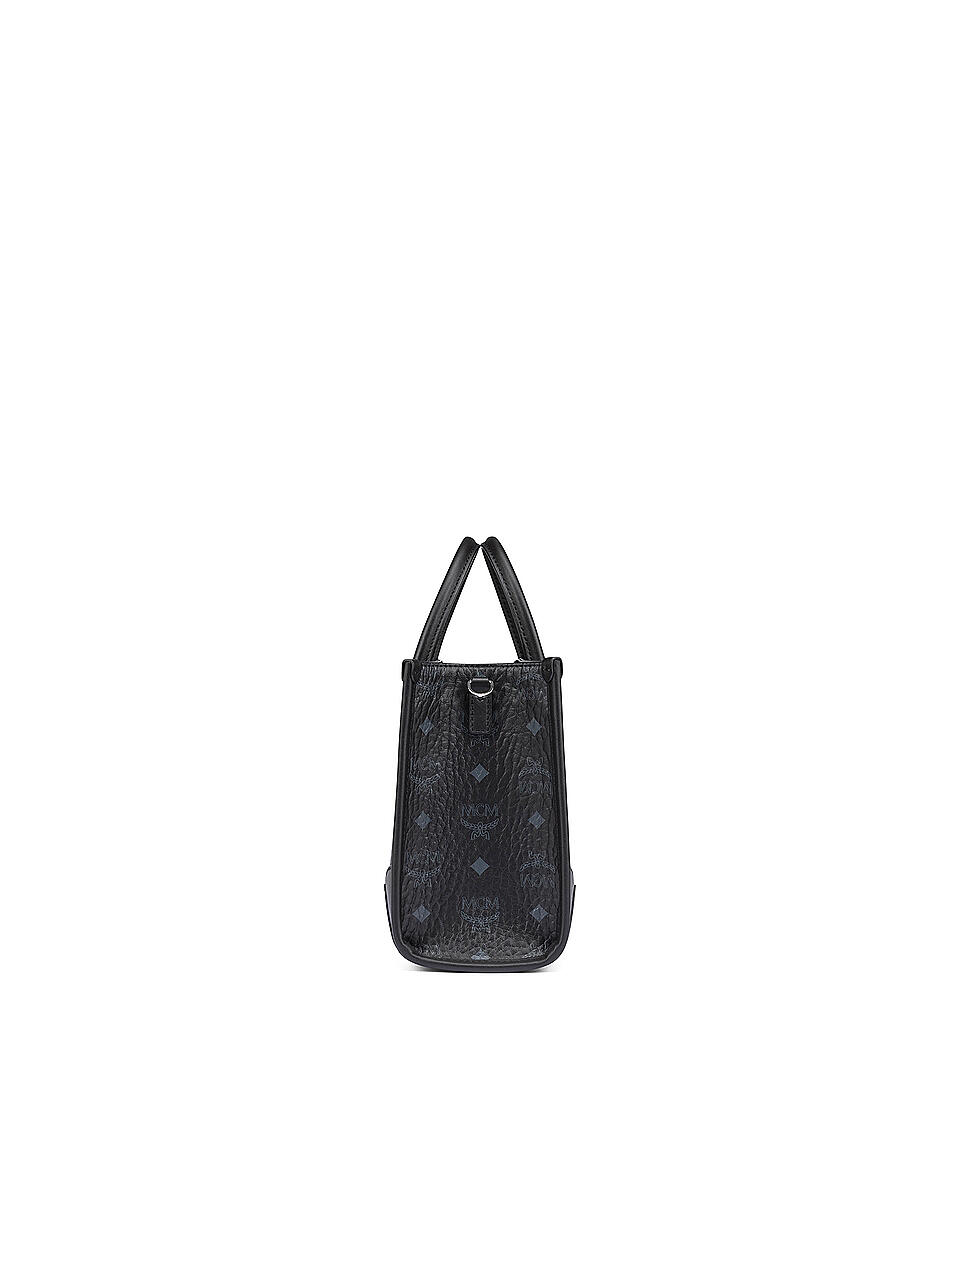 MCM | Tasche - Tote Bag MÜNCHEN SMALL | schwarz